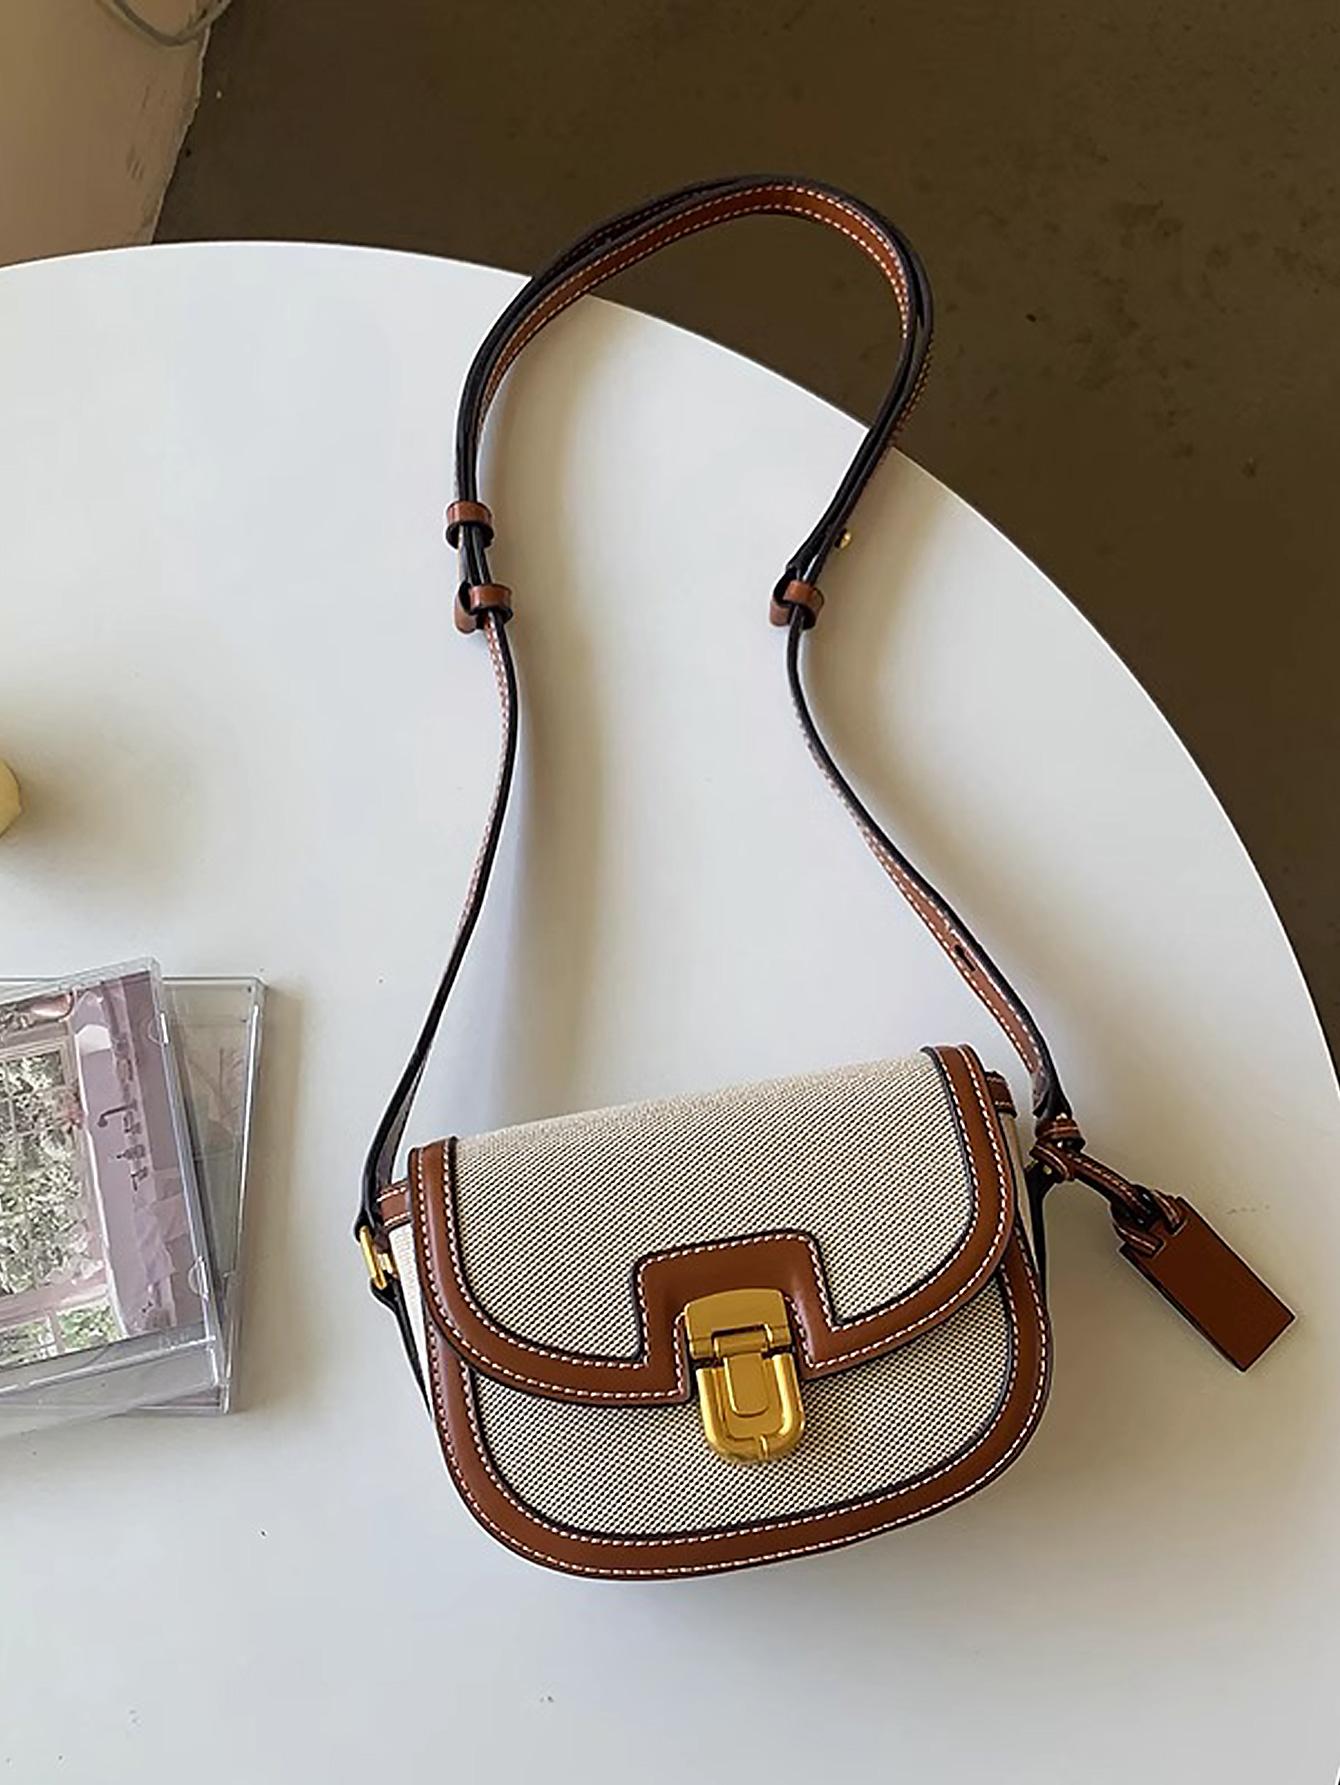 рюкзак на плечо 17 дюймов в винтажном стиле для путешествий Новая модная седельная сумка с цветными блоками, абрикос